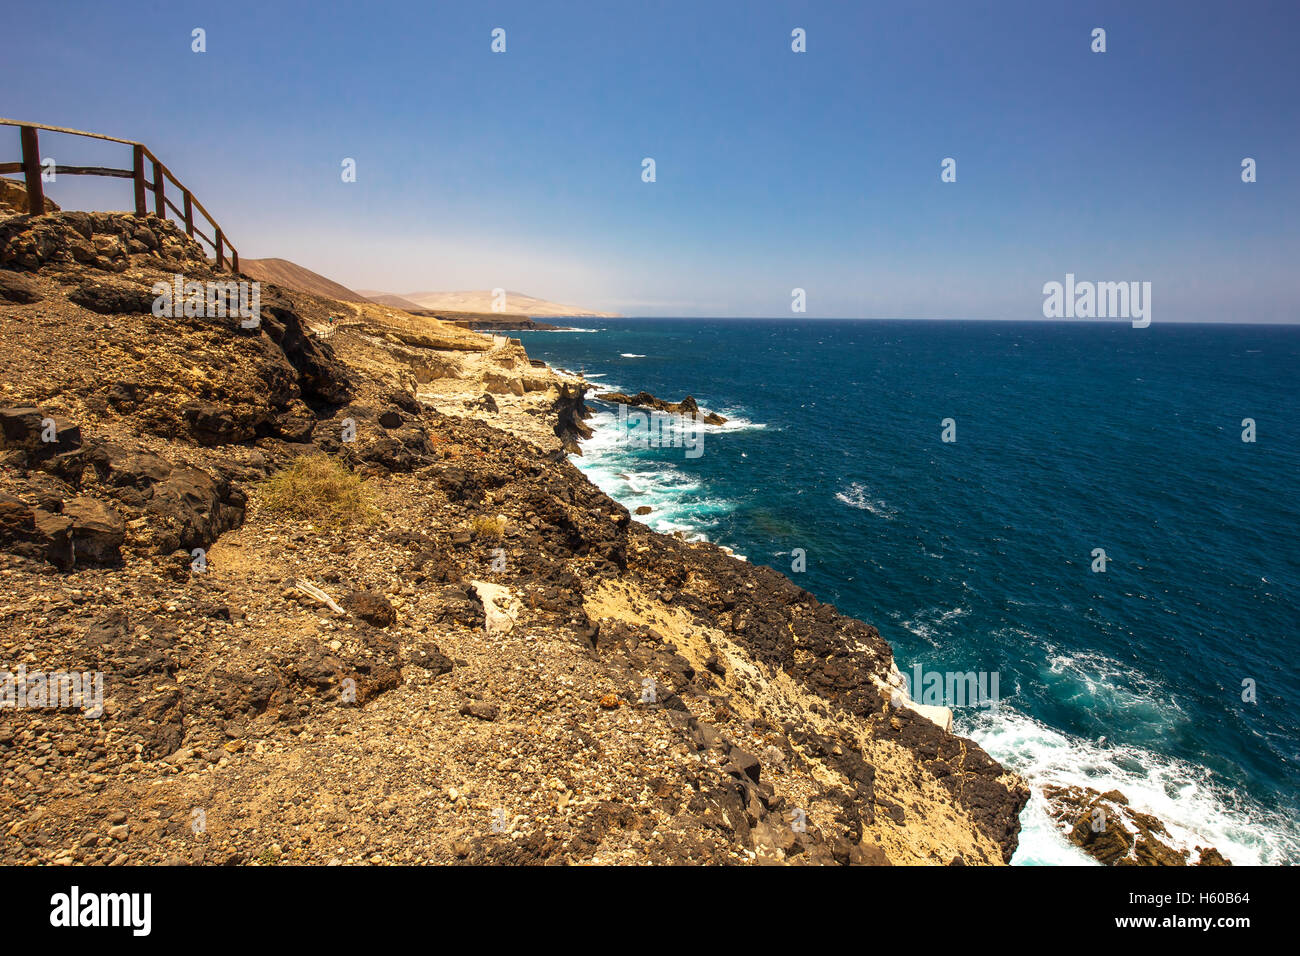 Vue d'Ajuy littoral avec montagnes volcanique sur l'île de Fuerteventura, Îles Canaries, Espagne. Banque D'Images